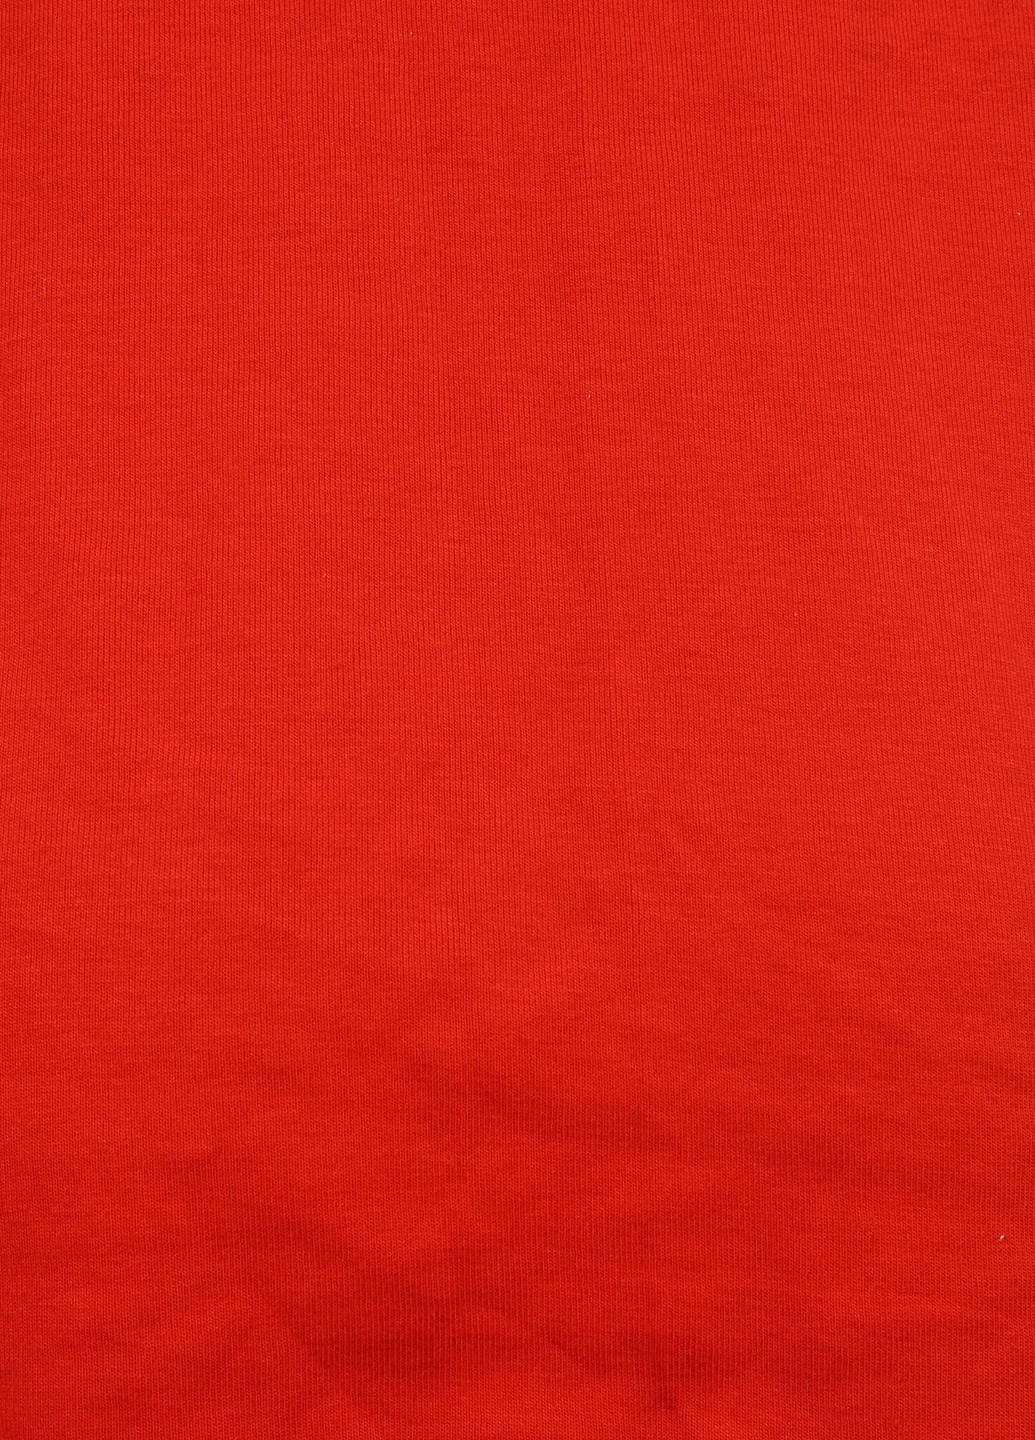 Красная летняя футболка Olsen